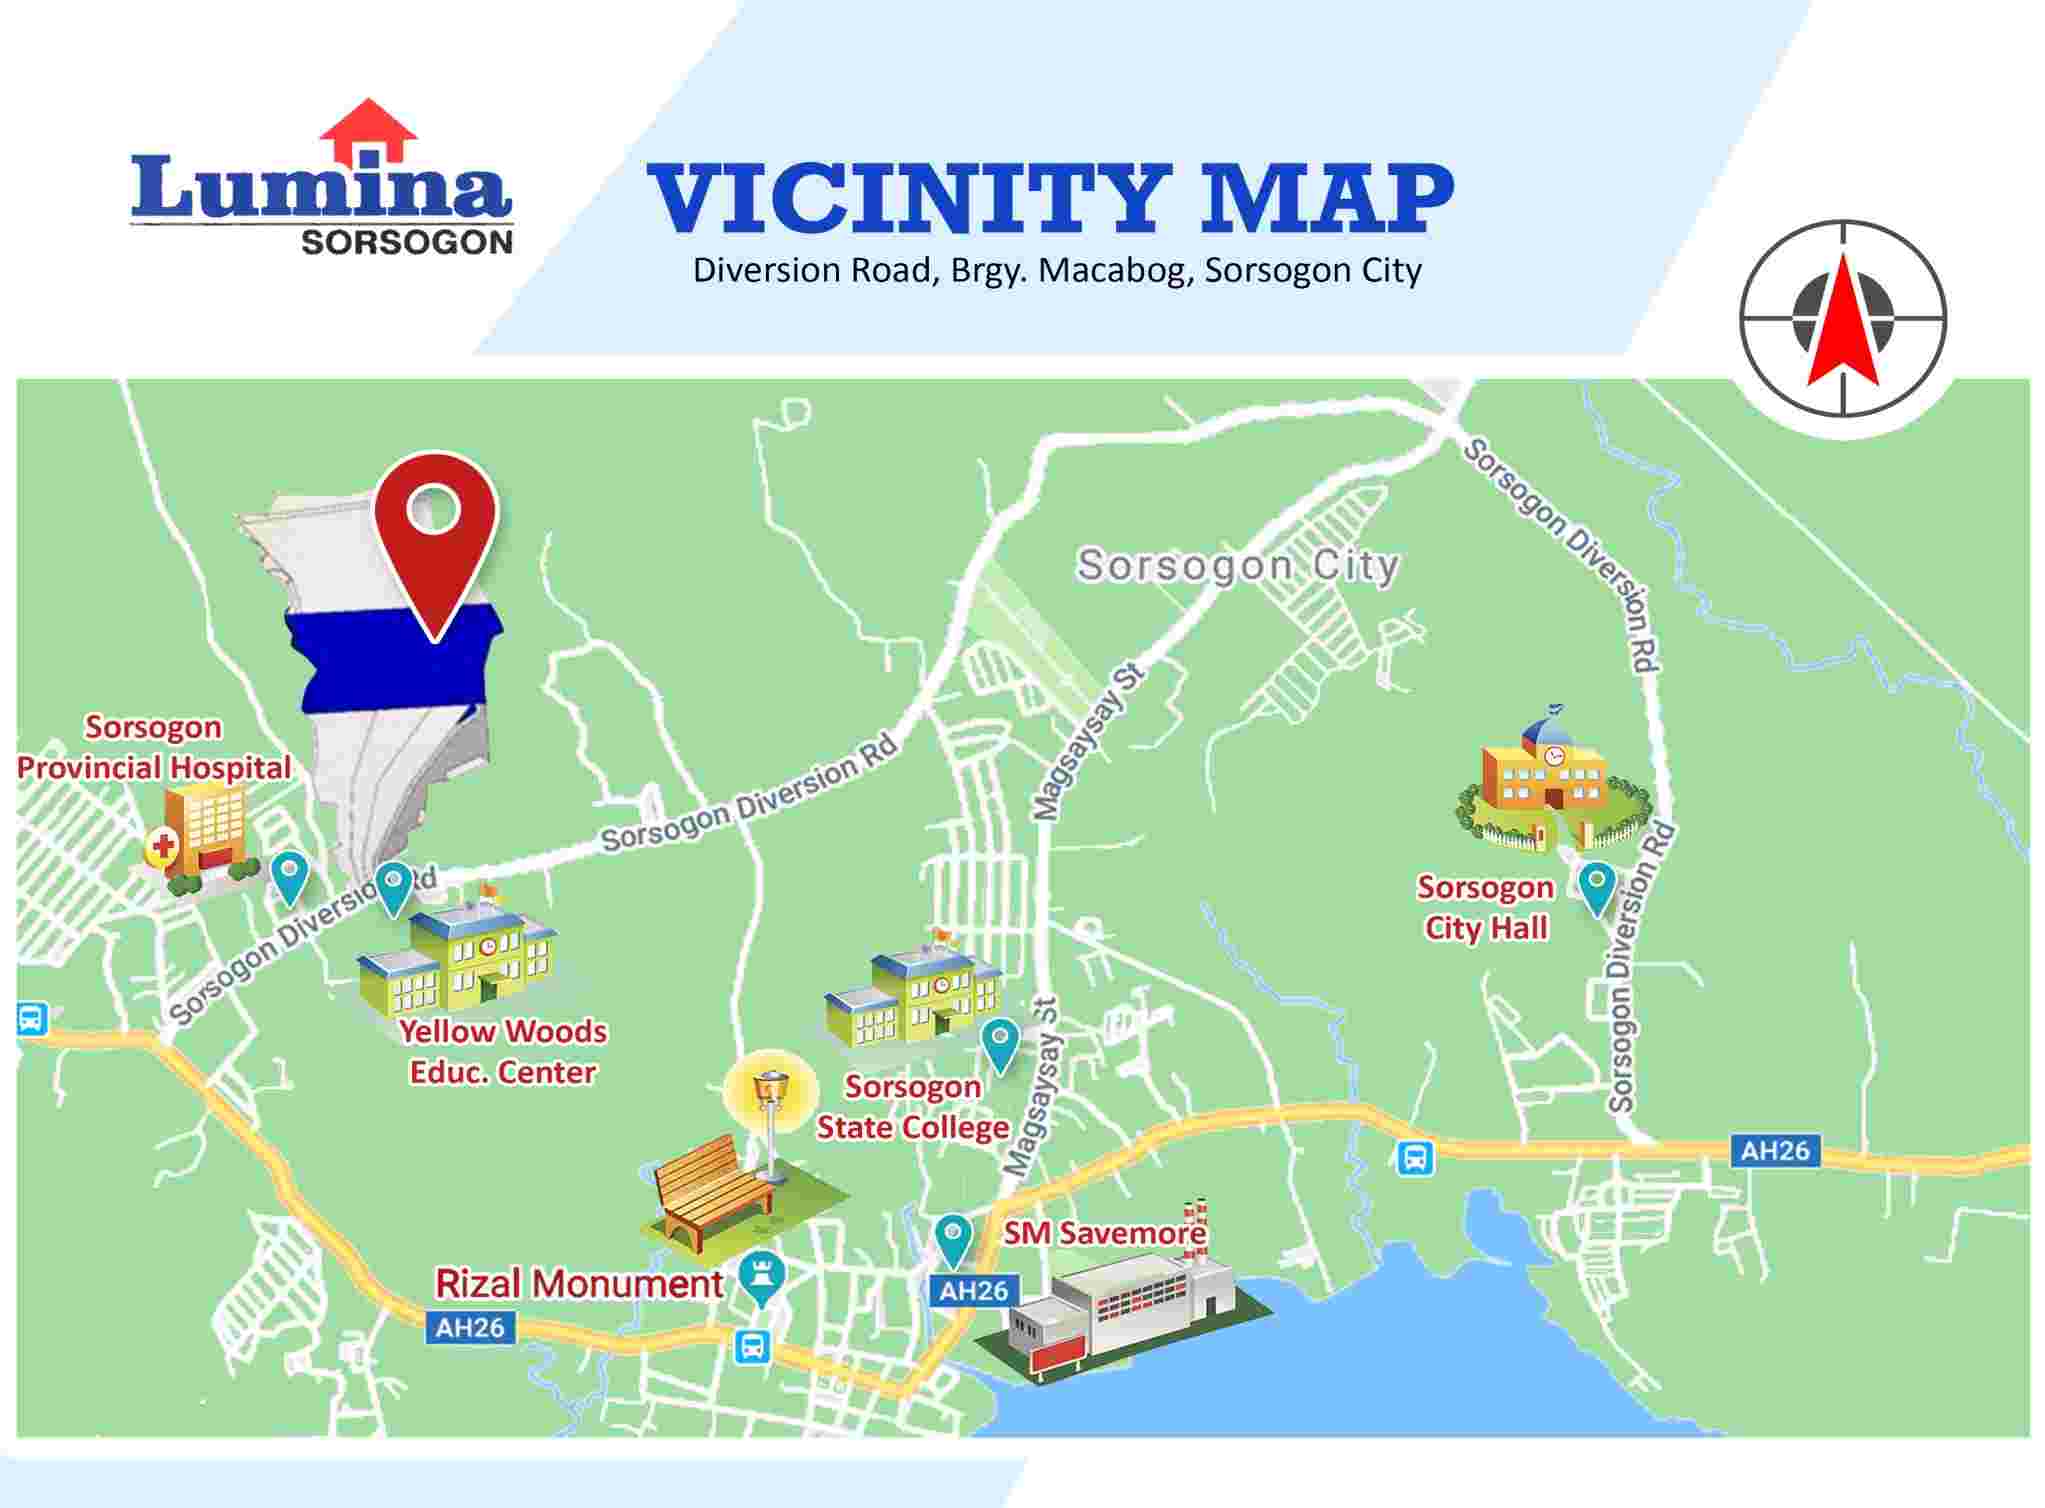 Vicinity-Map-1635994305.jpeg